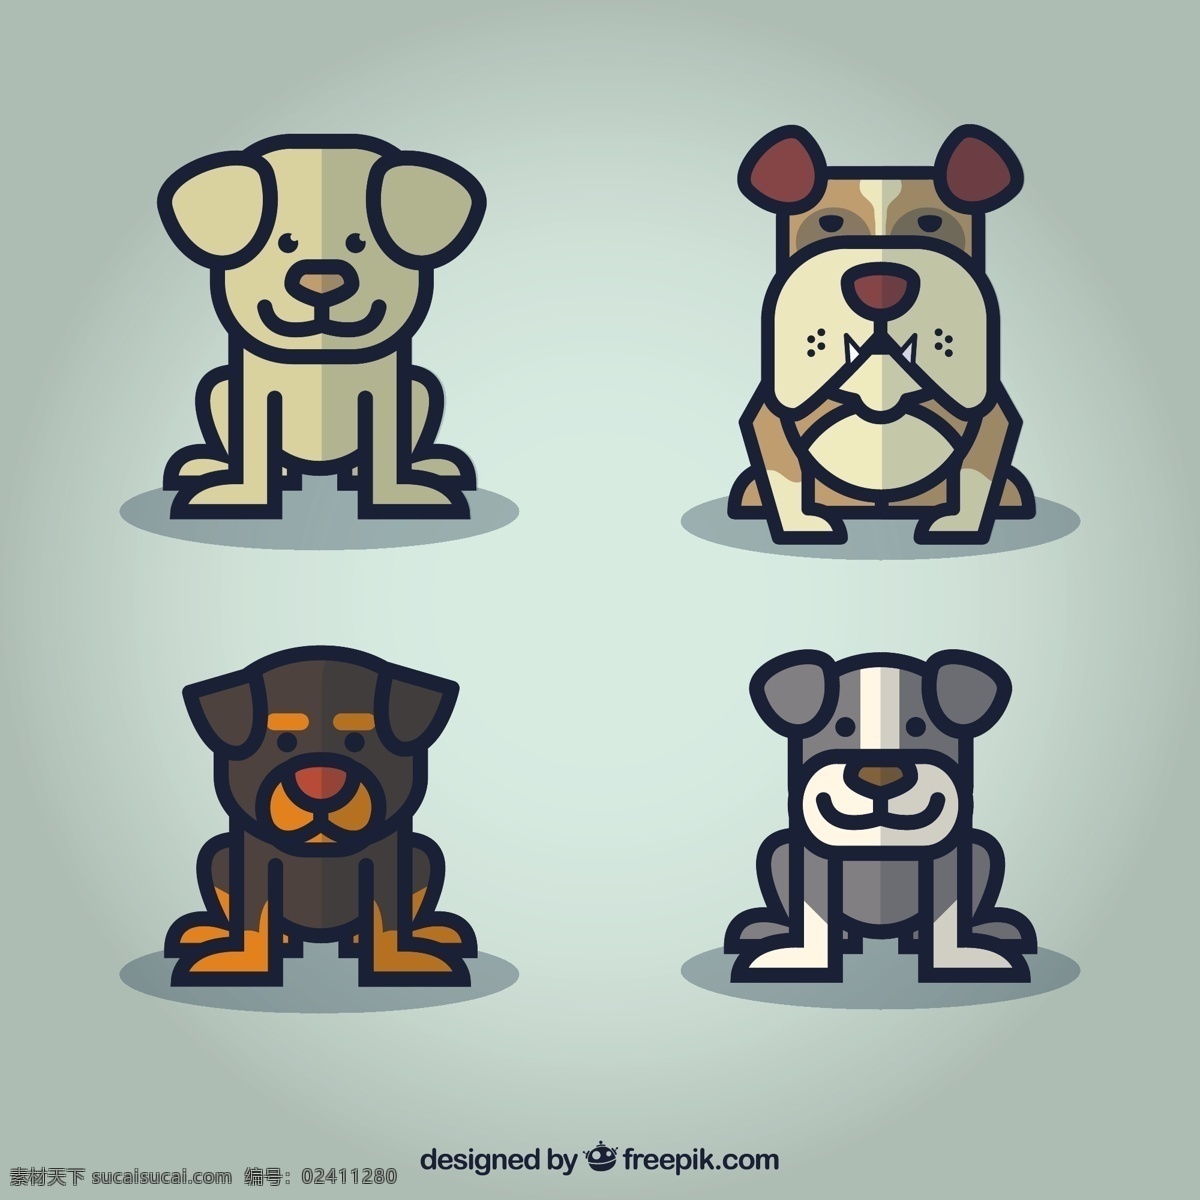 可爱 狗 卡通 系列 微笑 动物 可爱的动物 卡通动物 牛头犬 套装 孩子气 严肃 犬齿